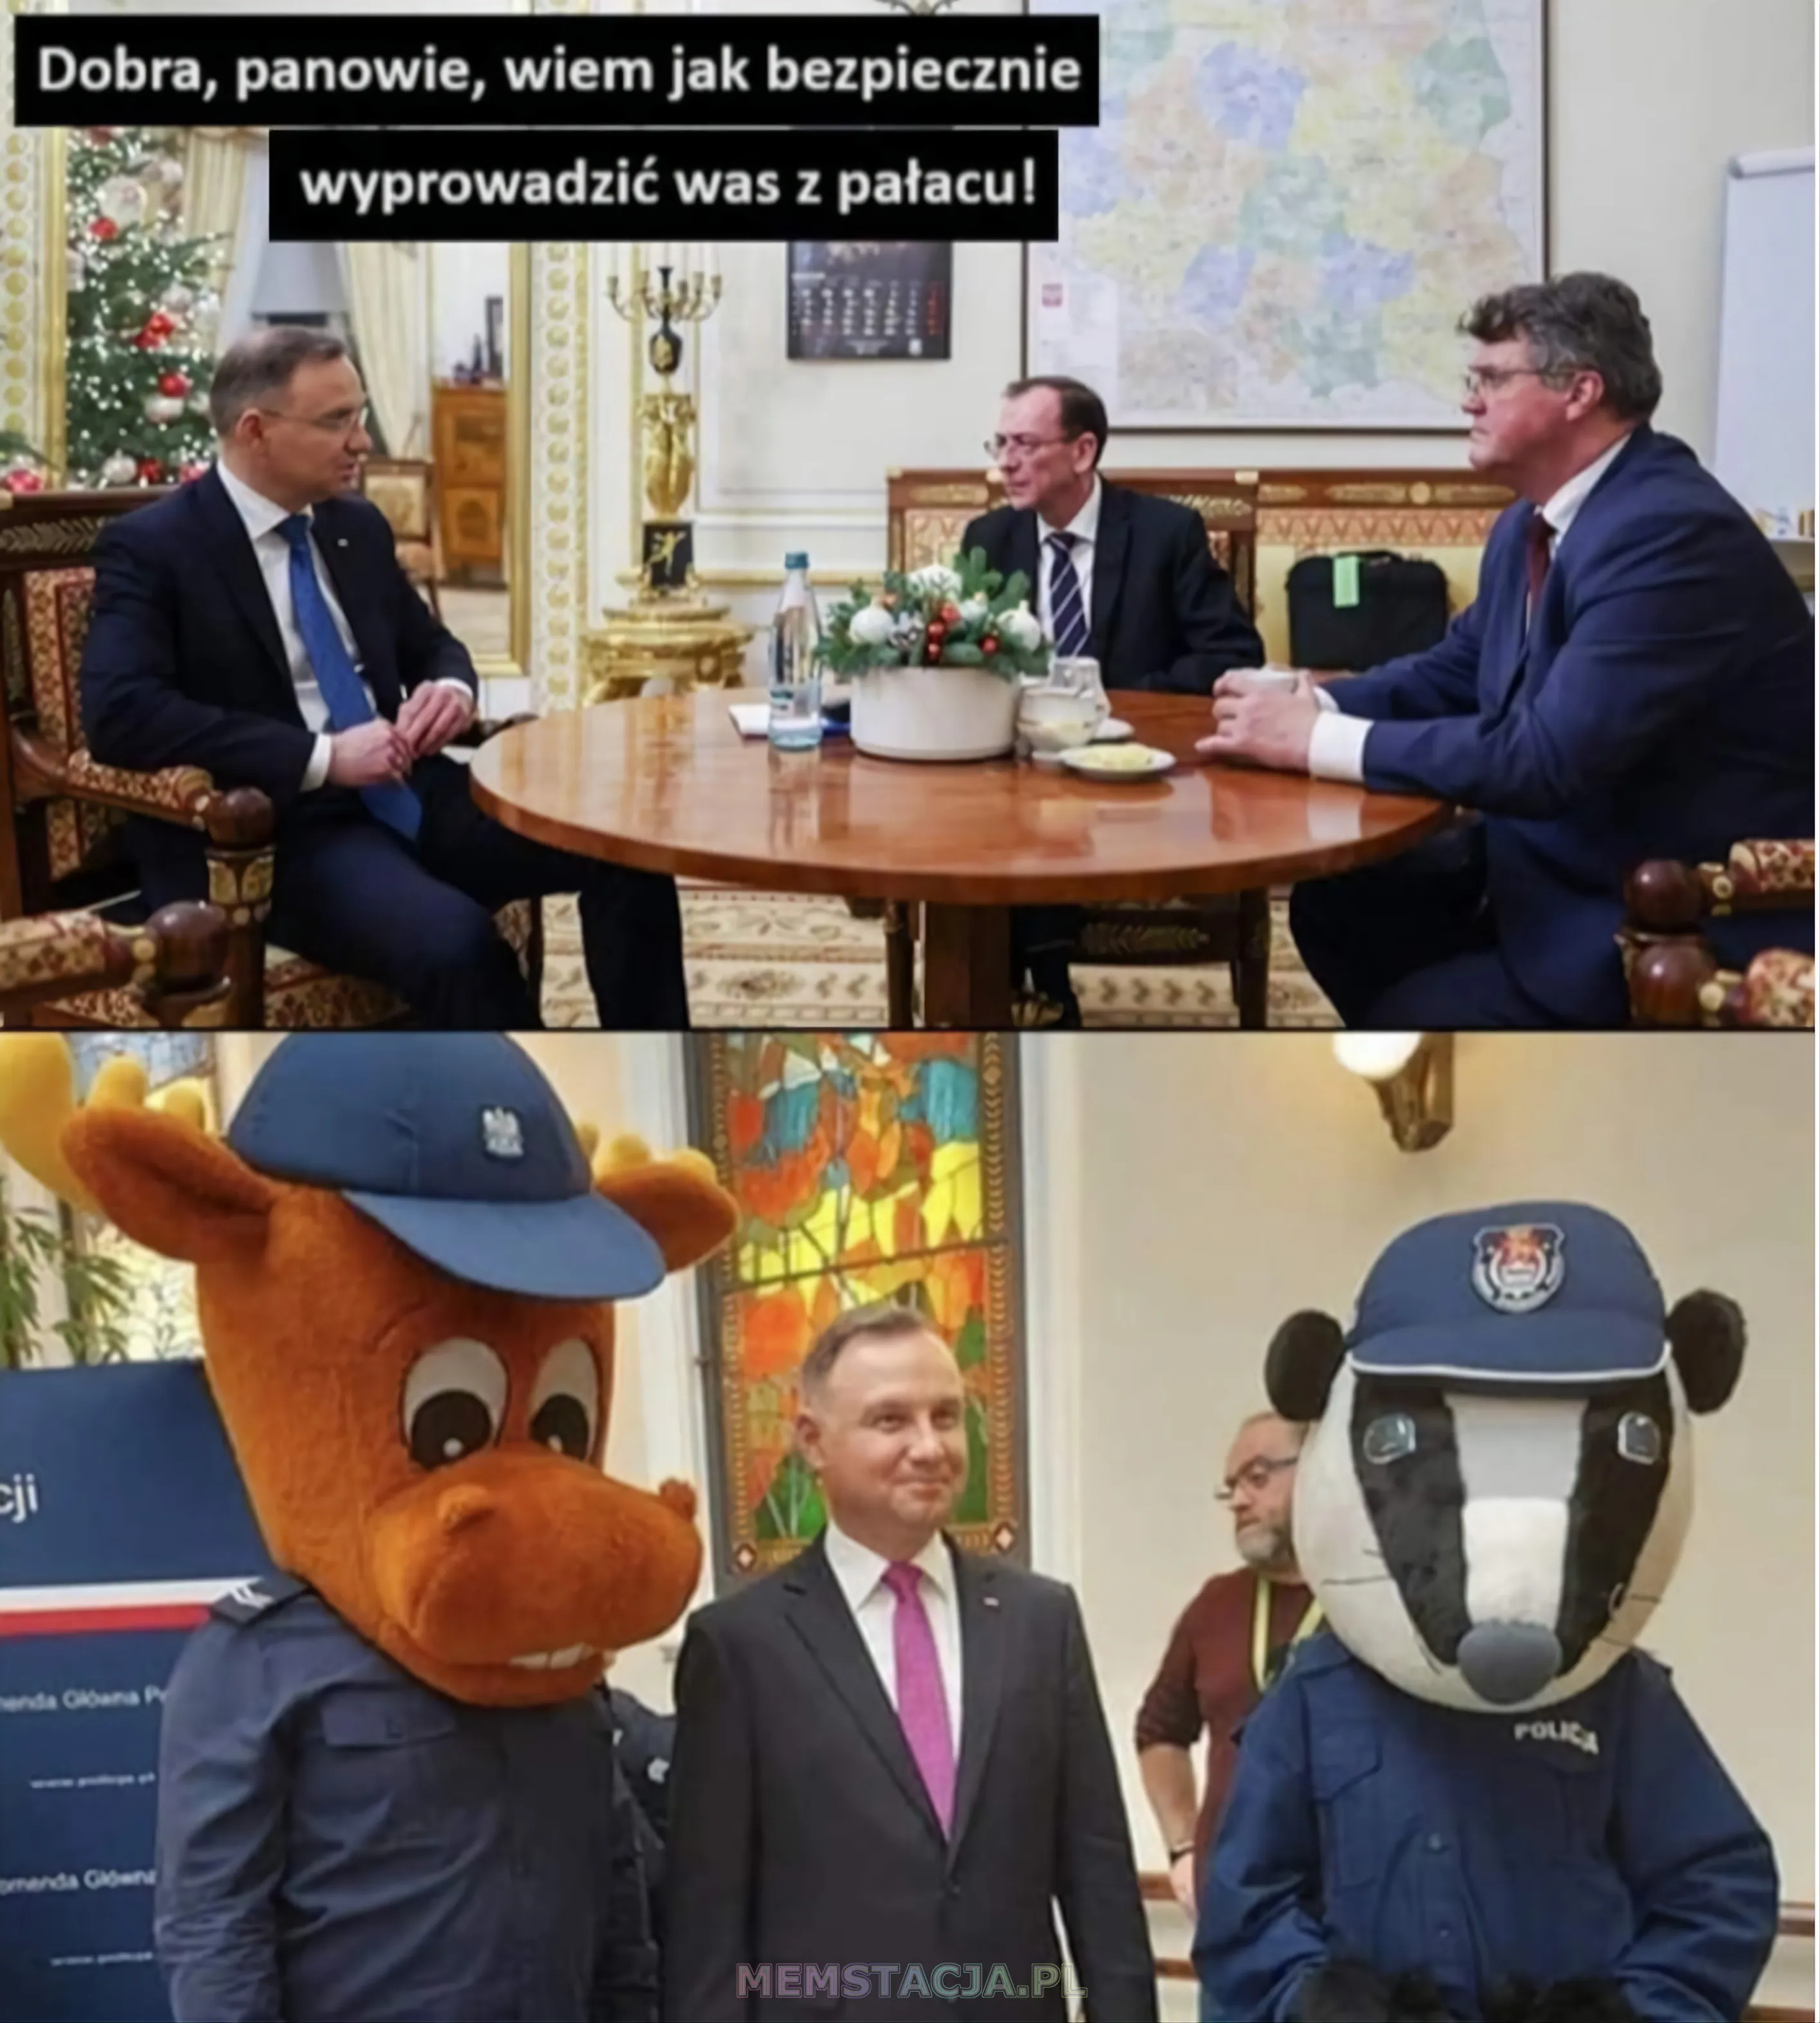 Mem przedstawiający dwa zdjęcia dotyczące trzech, tych samych postaci: Zdjęcie 1: 'Prezydent RP Andrzej Duda mówi do Wąsika i Kamińskiego - Dobra, panowie, wiem jak bezpiecznie wyprowadzić was z pałacu!'; Zdjęcie 2: Prezydent Andrzej Duda wraz z maskotkami Policjantów